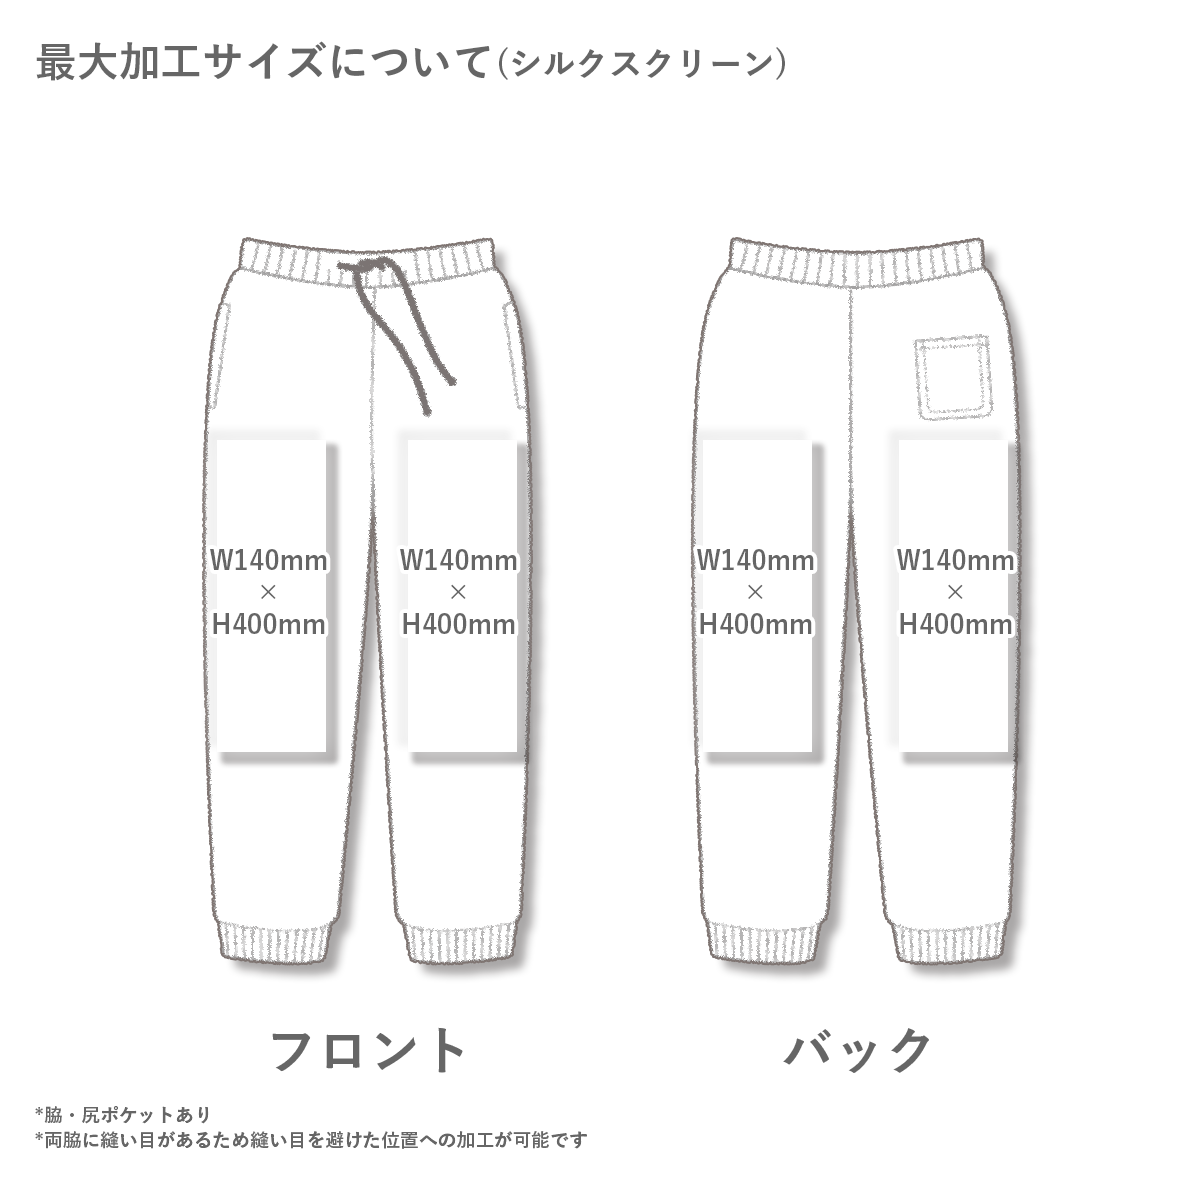 【在庫限り】 Independent インデペンデント 8.5 oz Midweight Fleece Pants (品番IND20PNT)